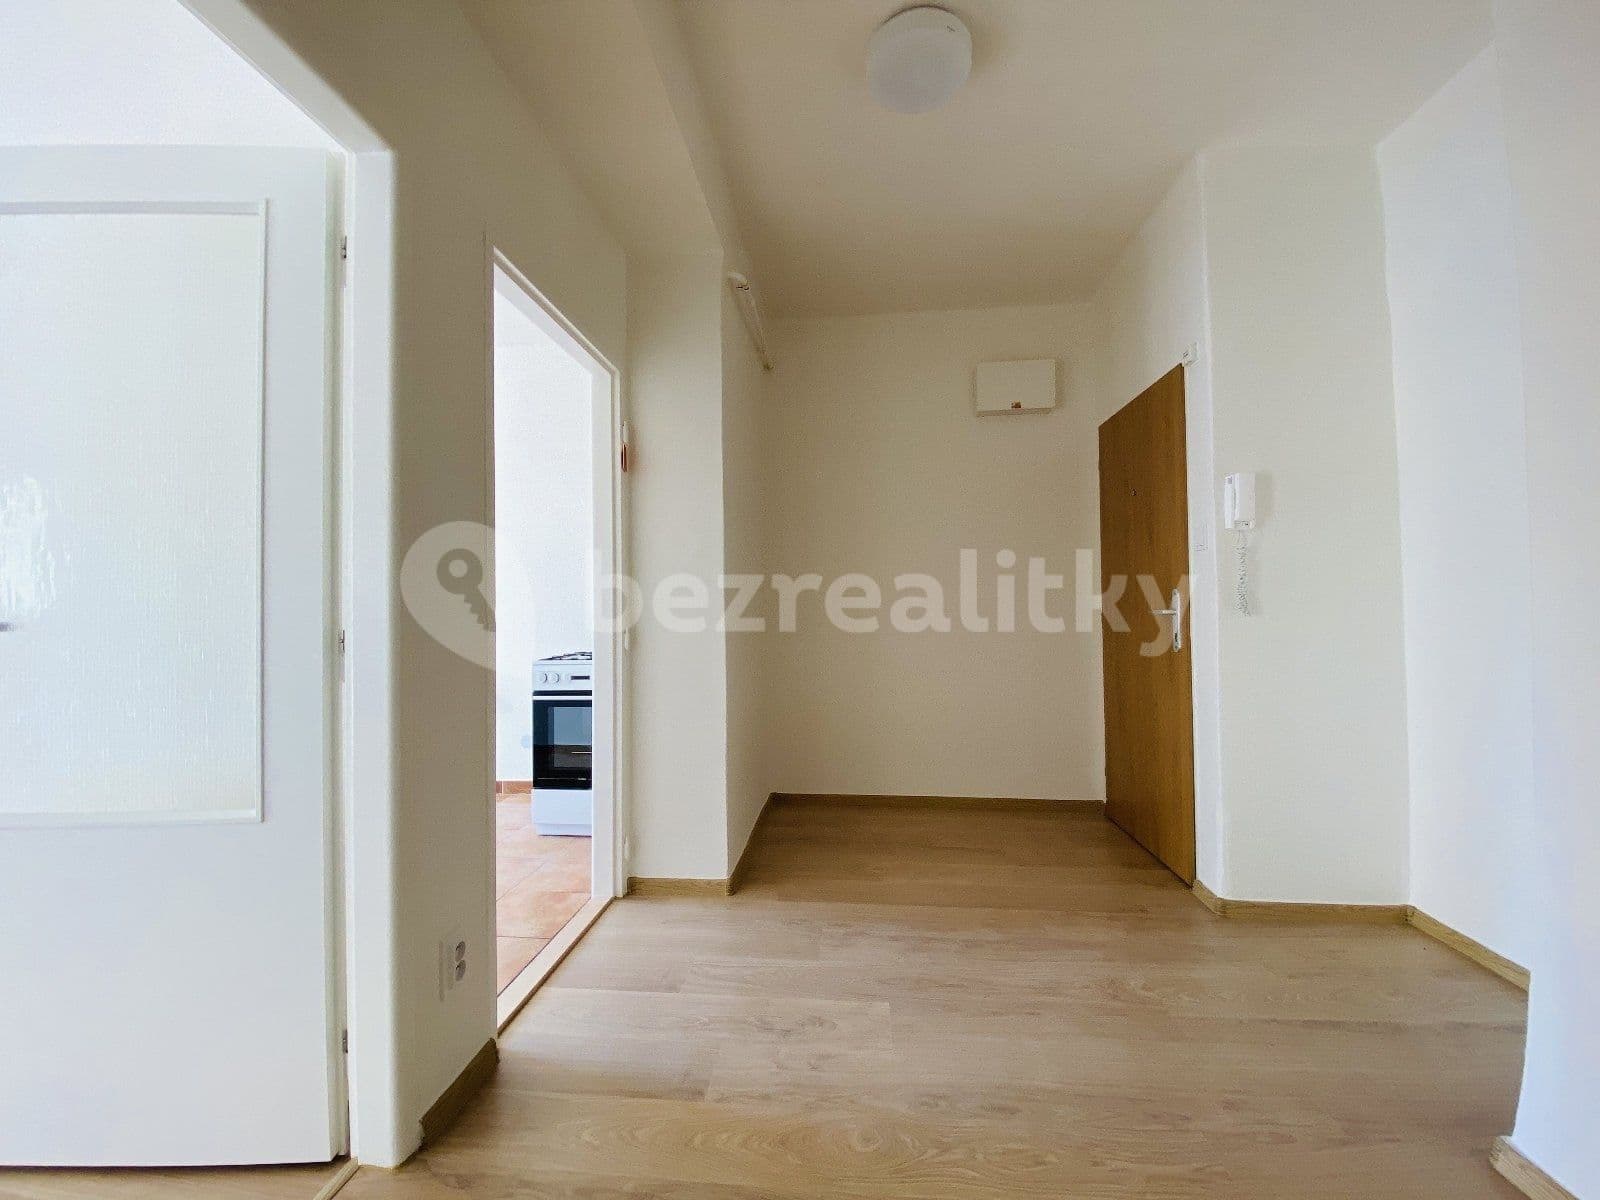 2 bedroom flat to rent, 57 m², Opavská, Ostrava, Moravskoslezský Region